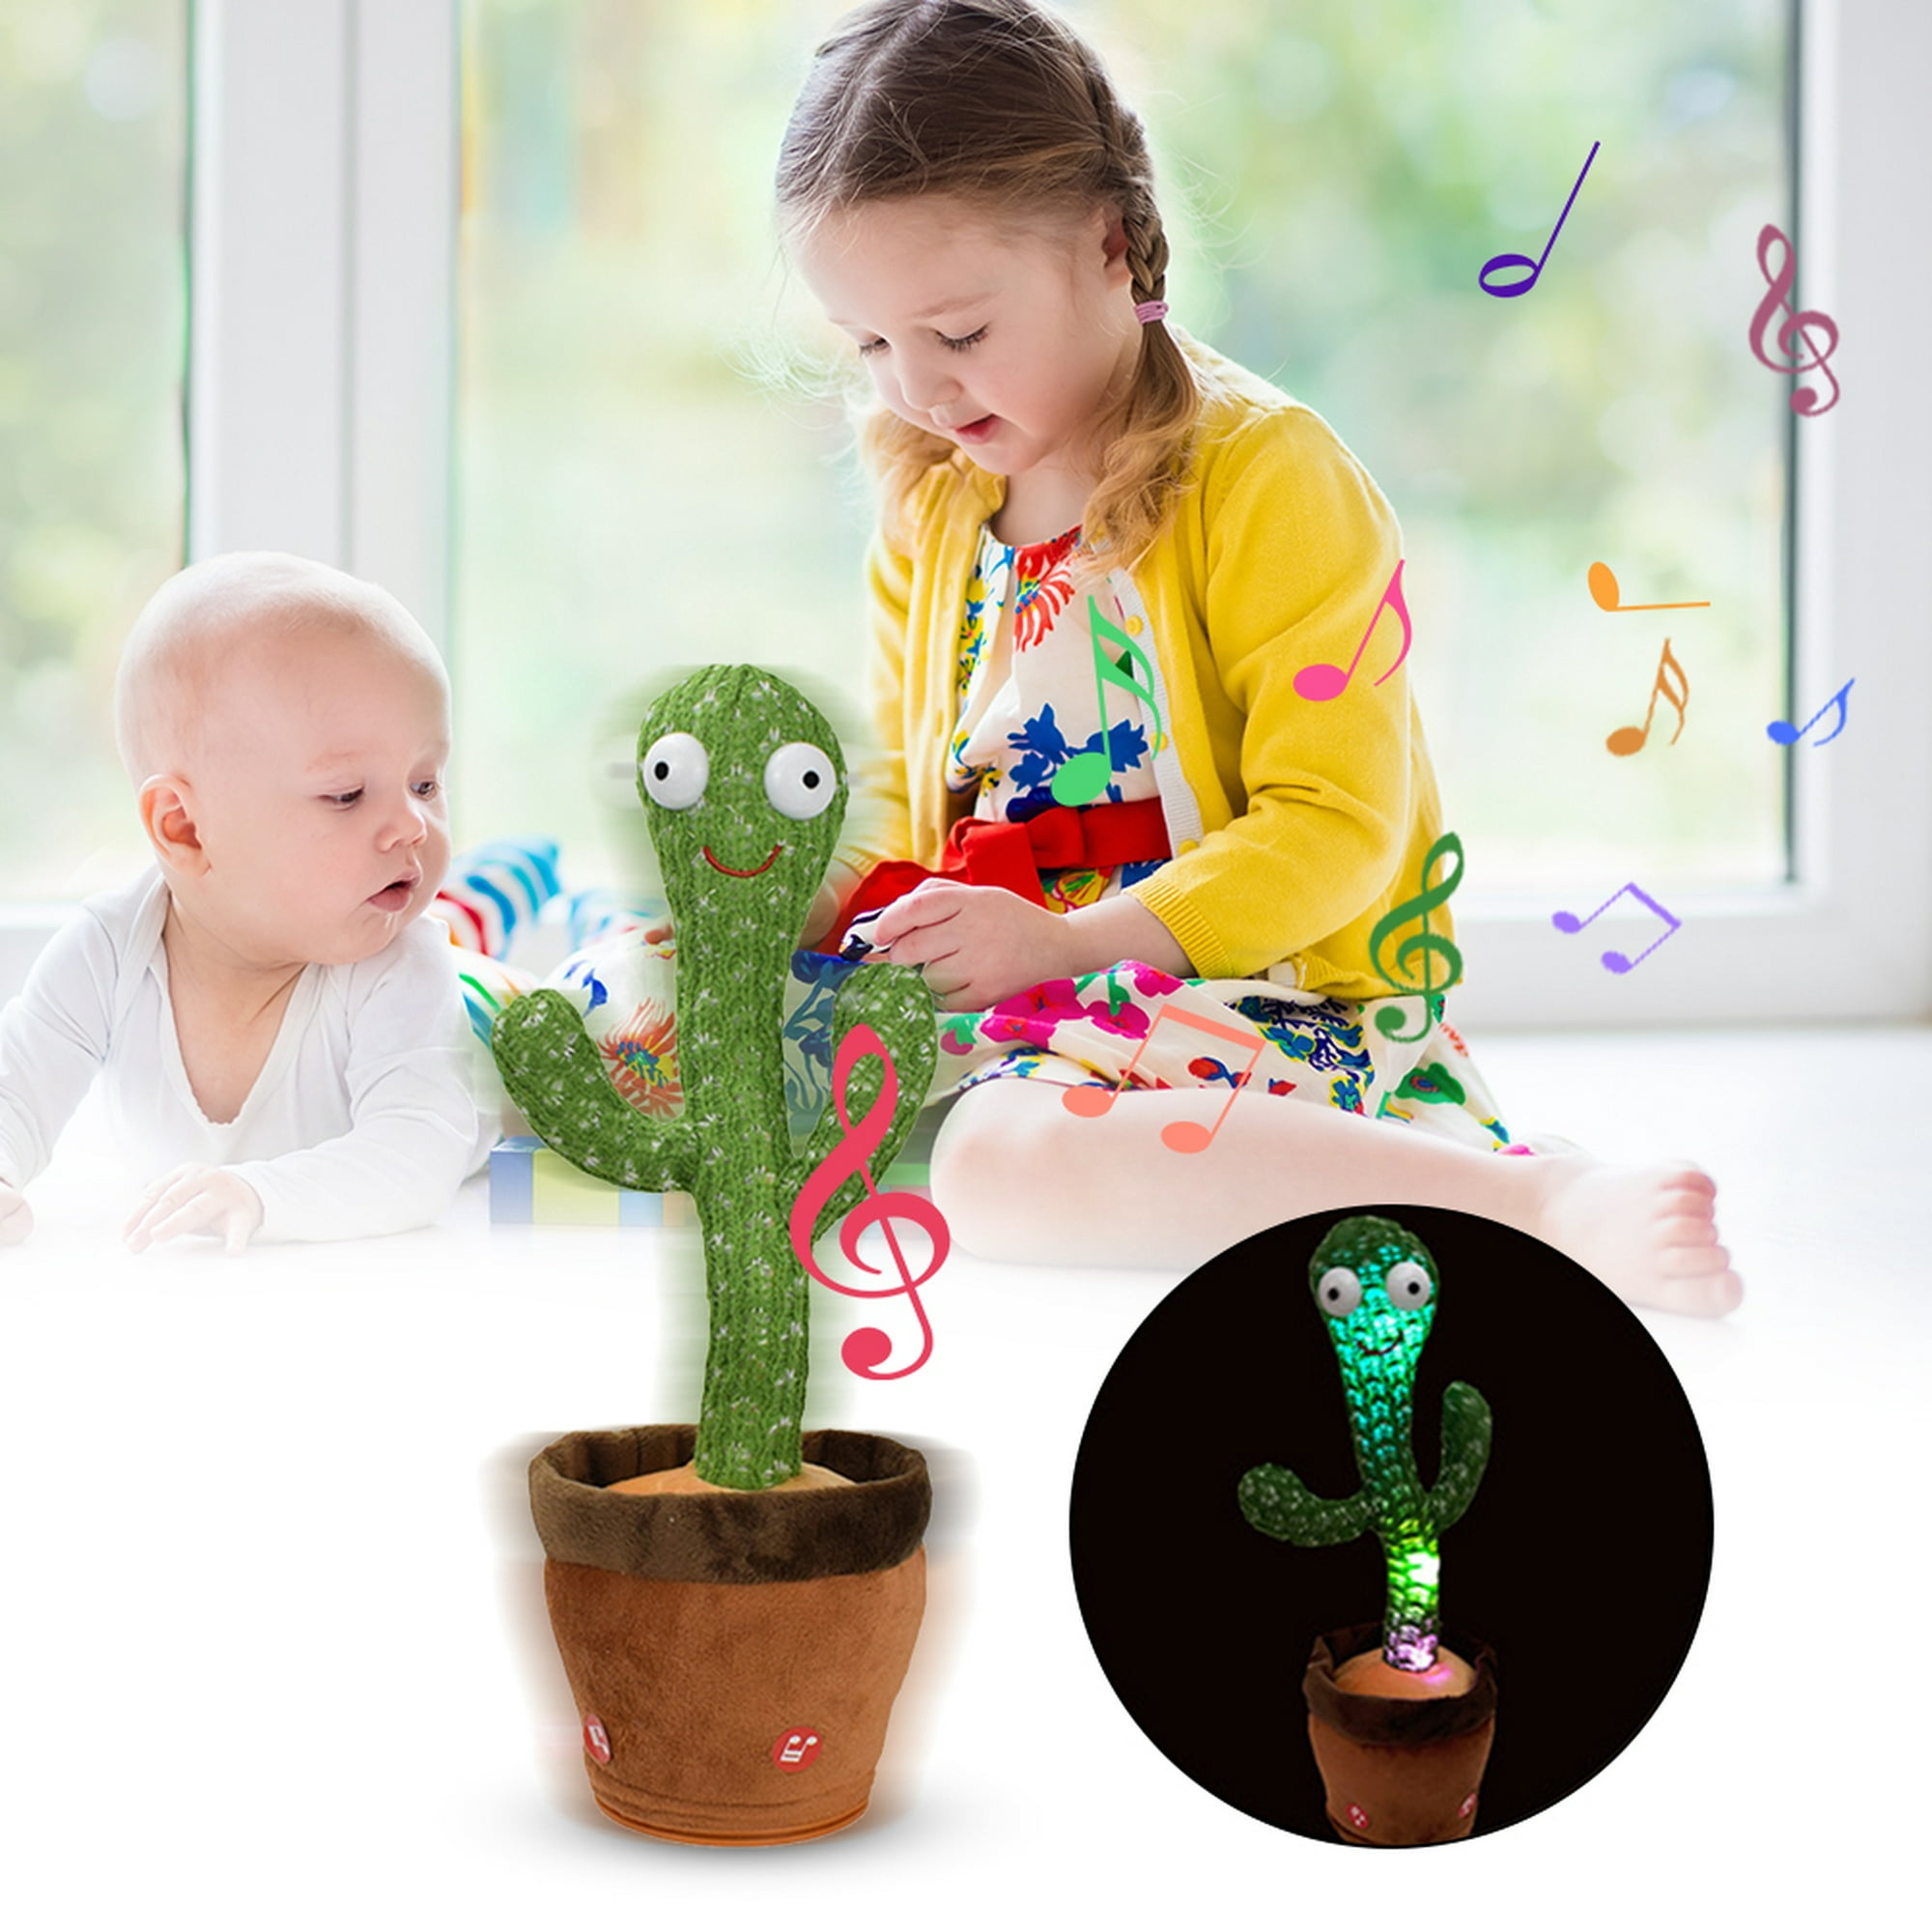 Centro de actividad para bebés, juguetes y juegos de aprendizaje para niños  de 1 año con iluminación y sonido, Yotijar centro de actividades